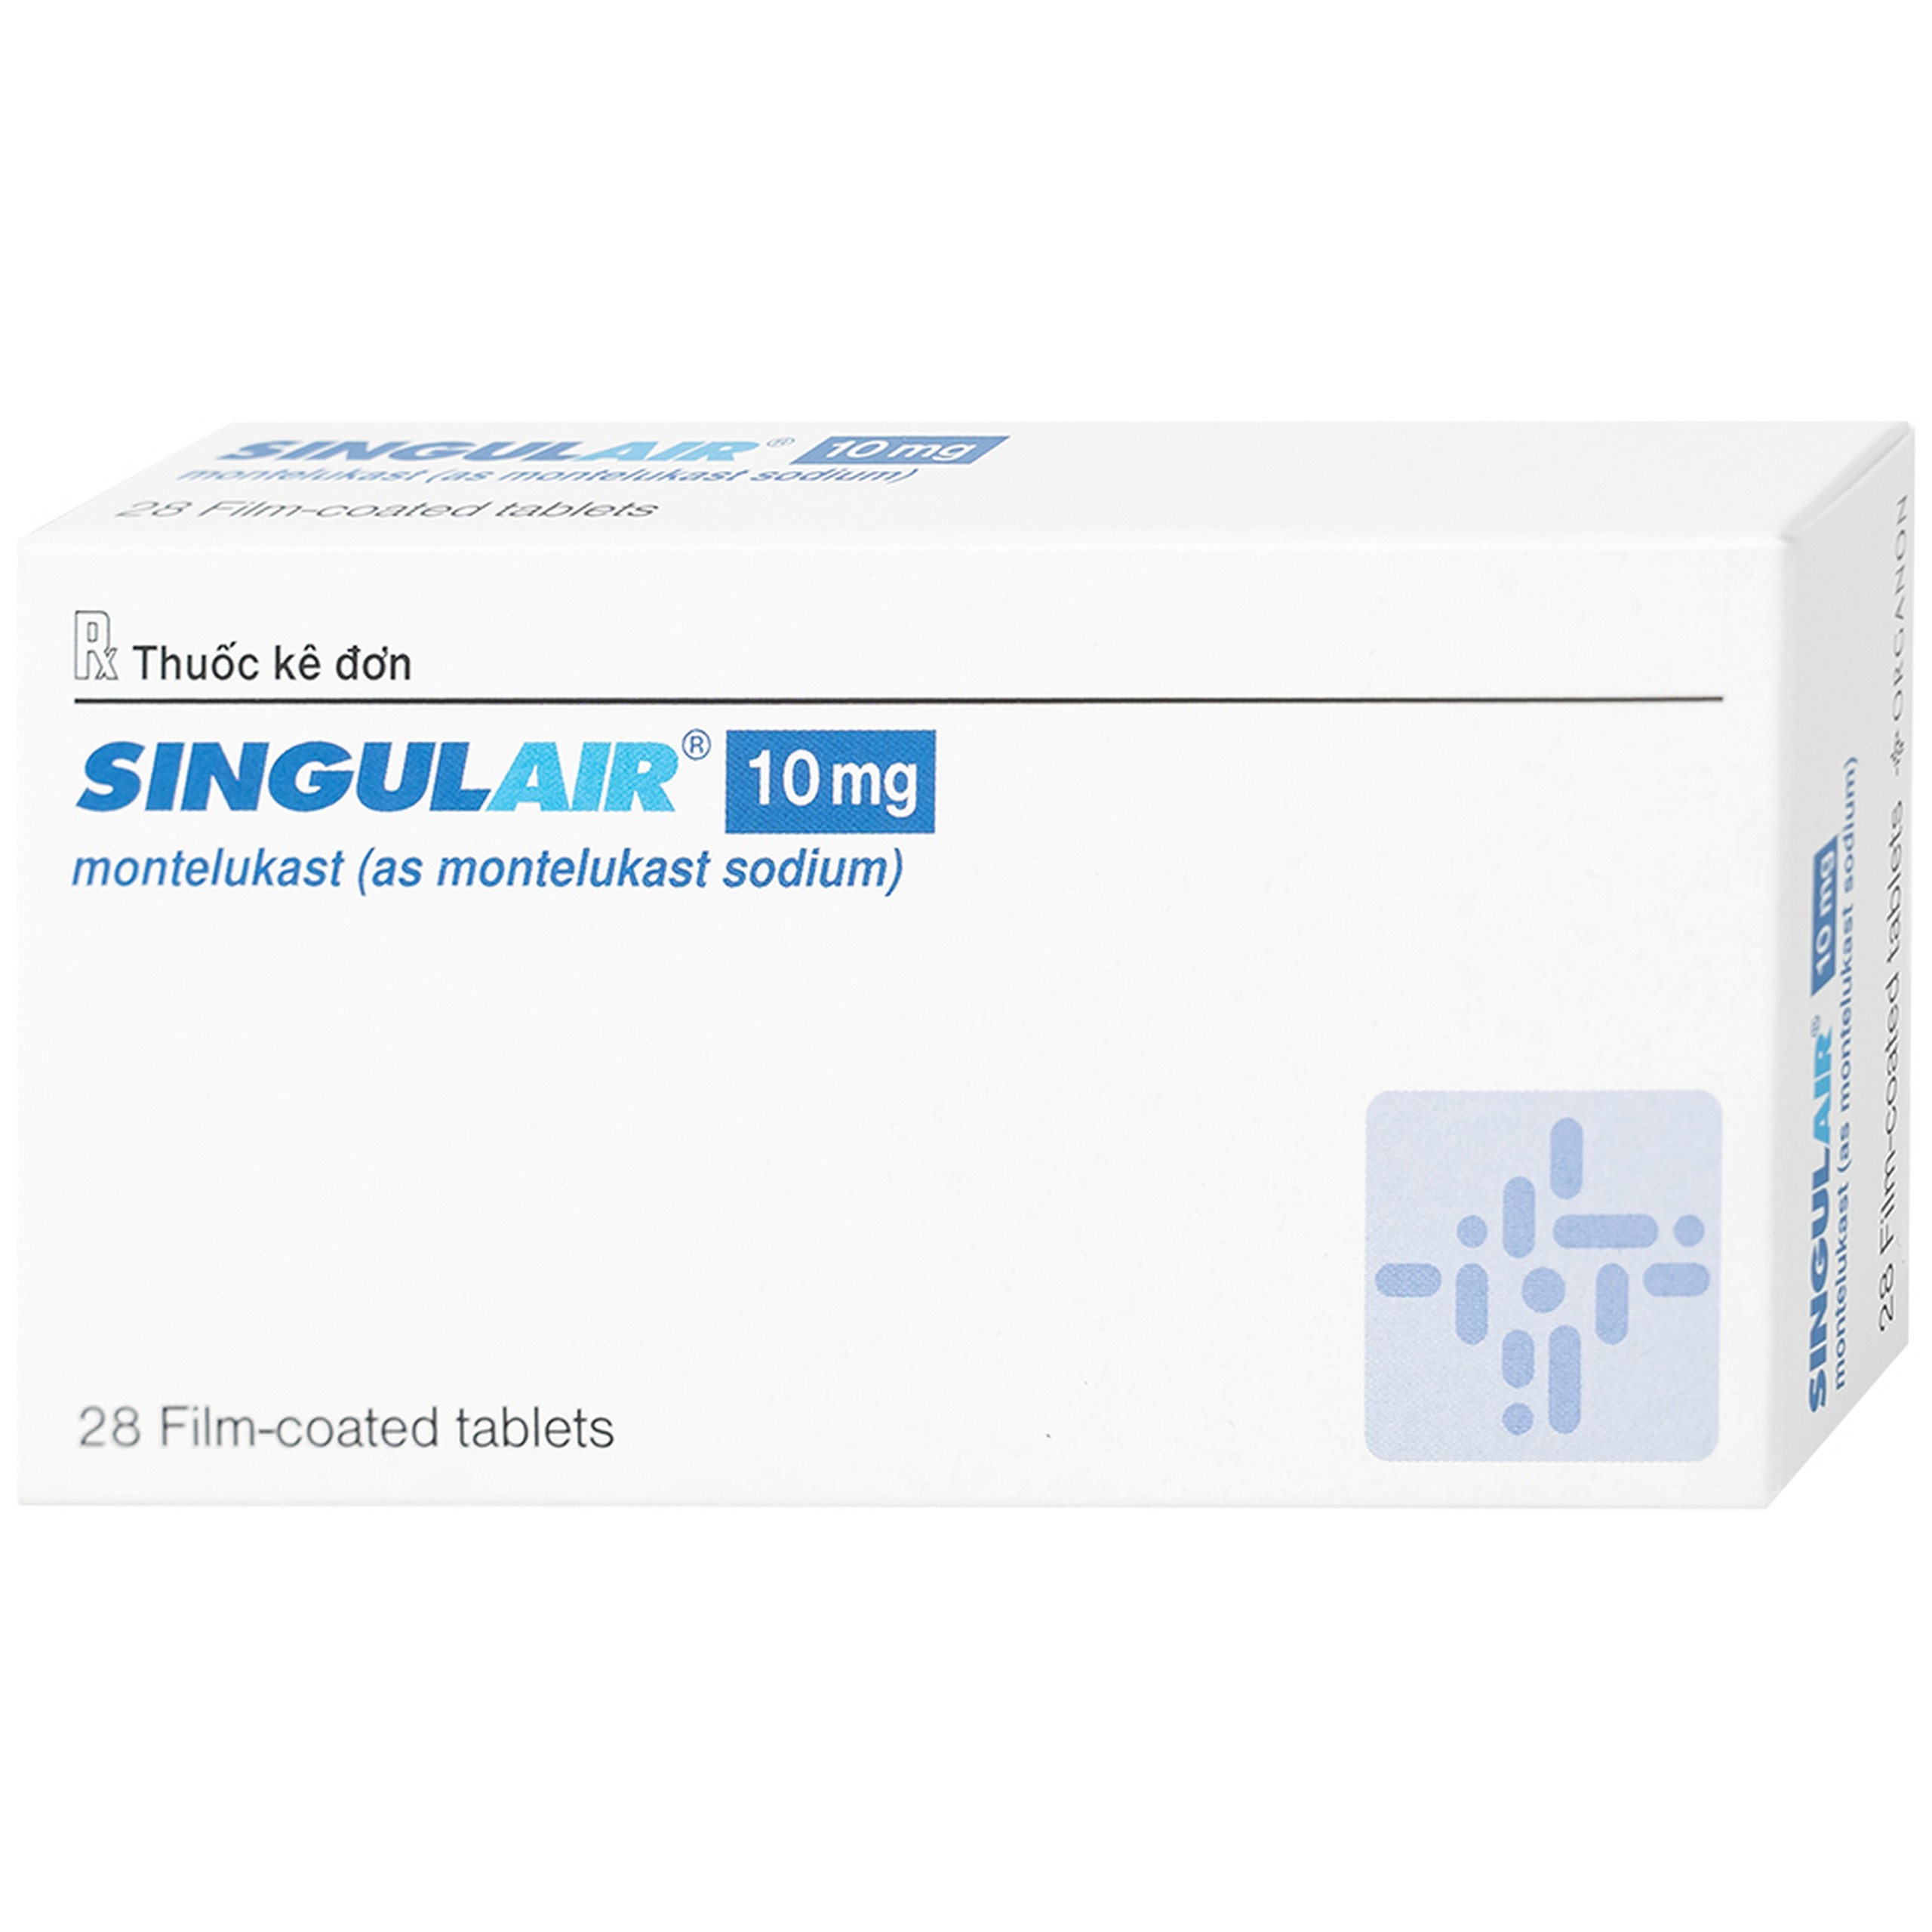 Thuốc Singulair 10mg Organon Pharma điều trị hen dai dẳng từ nhẹ đến trung bình (2 vỉ x 14 viên)